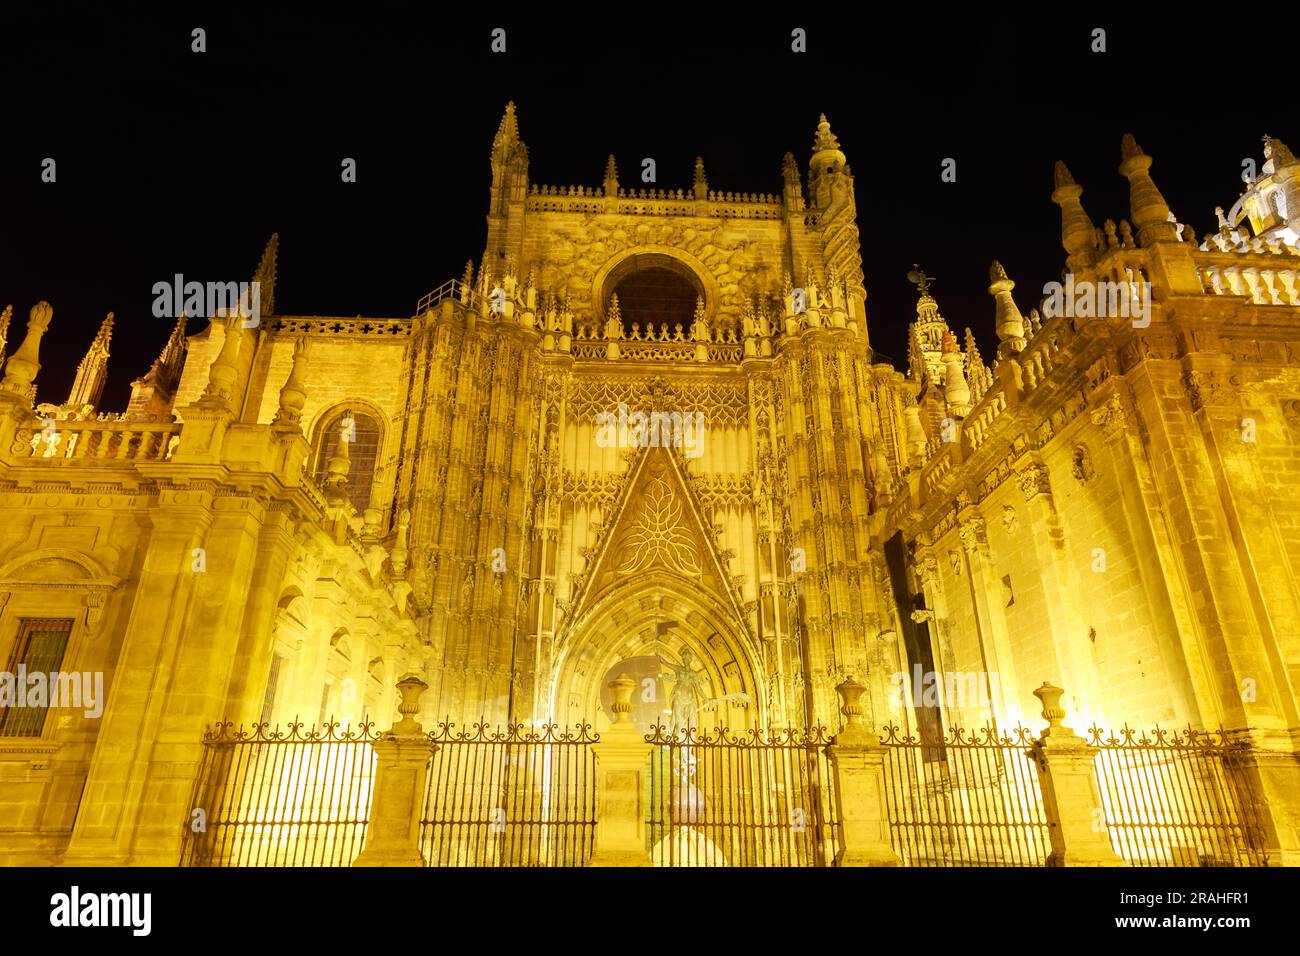 Cattedrale di Siviglia di notte. Attrazioni turistiche di Siviglia, Andalusia, Spagna. Cattedrale di Santa Maria della sede, cattolica romana e la più grande Foto Stock